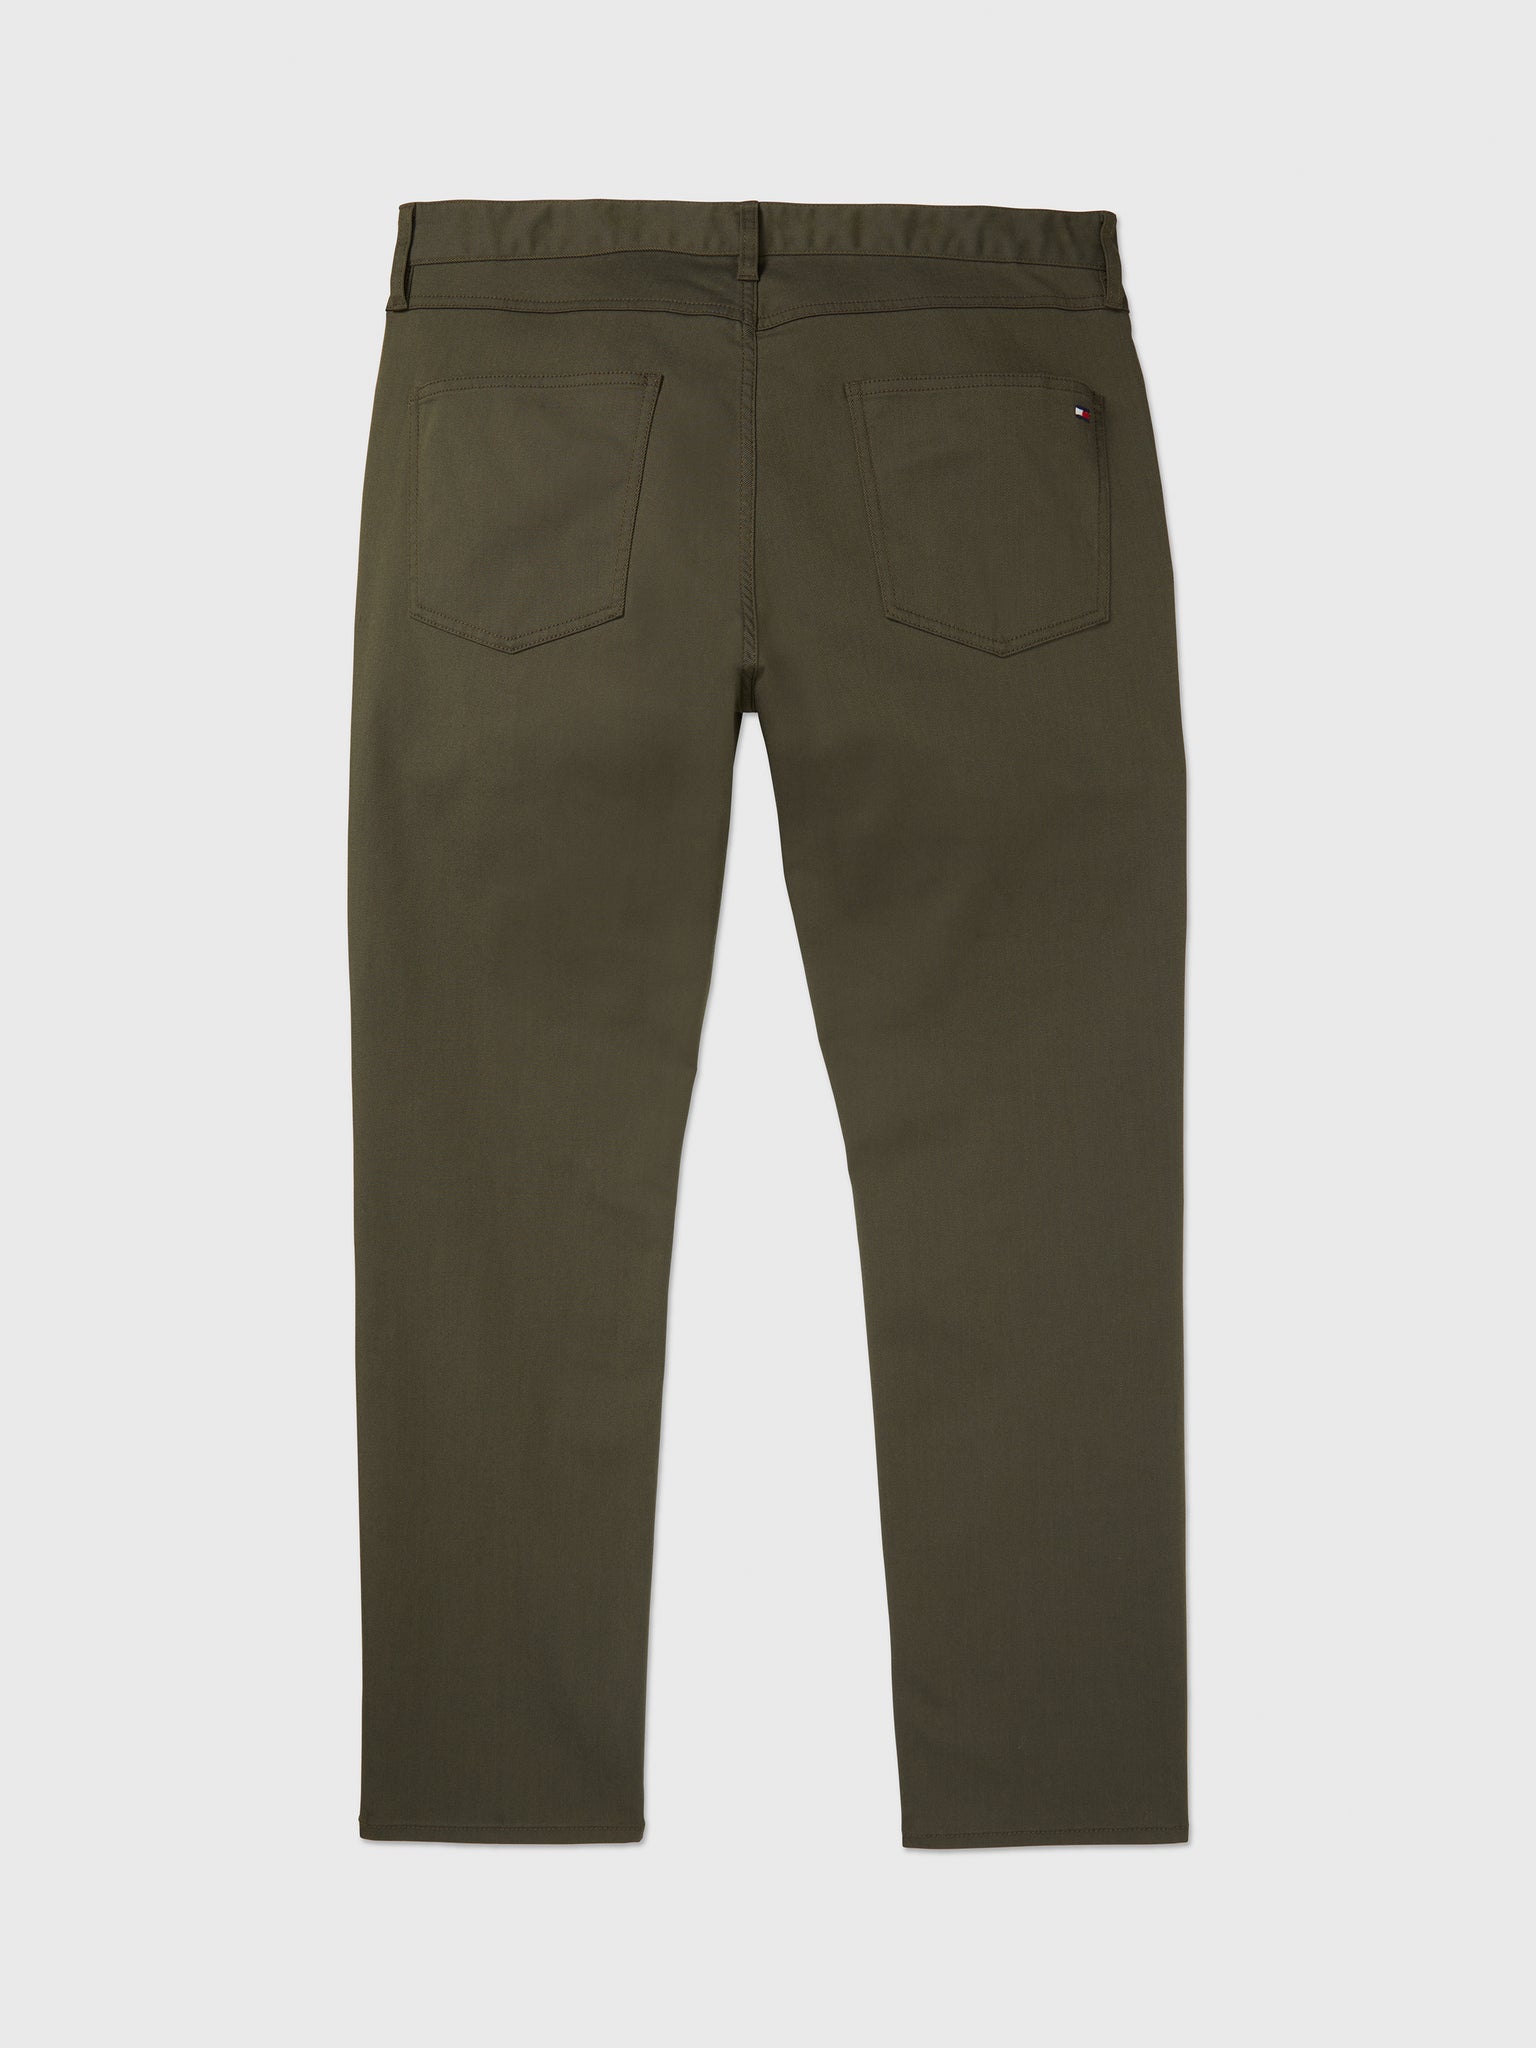 Denton Pant (Mens) - Army Green